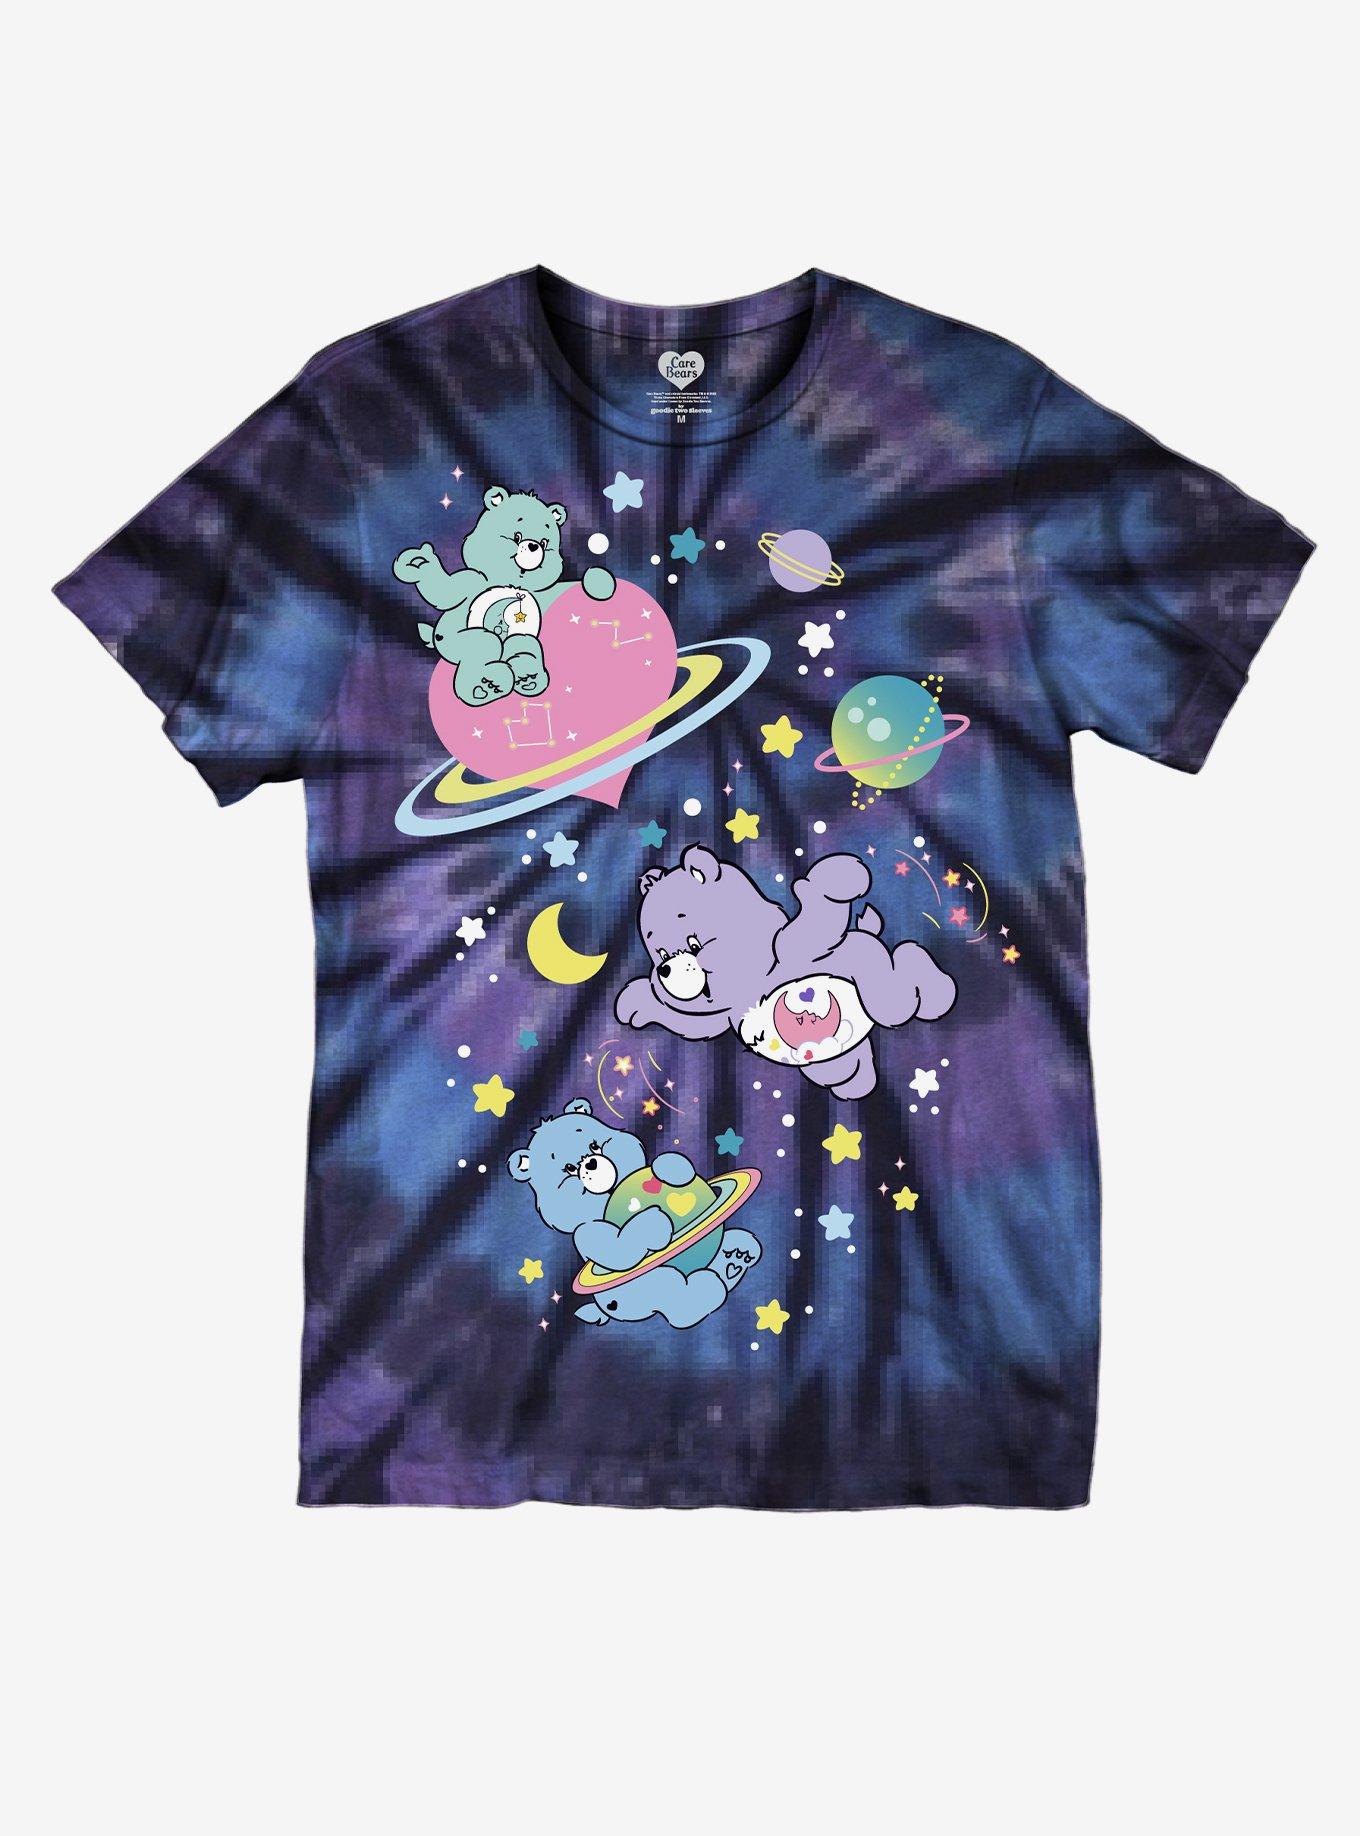 Care Bears Space Planet Tie-Dye Boyfriend Fit Girls T-Shirt